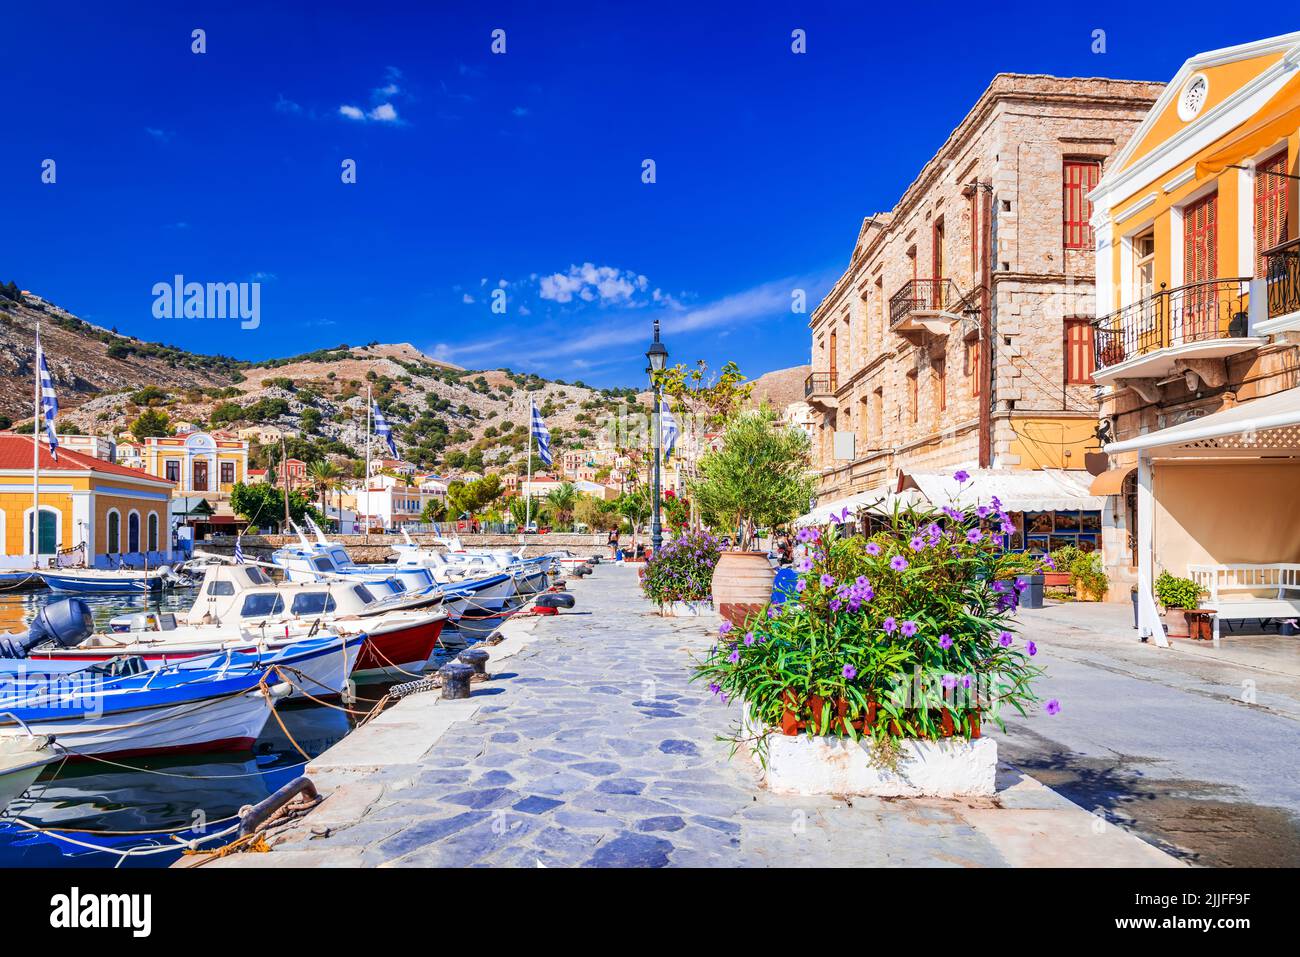 Symi, Grecia. Una de las islas griegas más bellas del Dodecaneso, Mar Egeo. Coloridas casas turcas antiguas en la bahía de Symi. Foto de stock